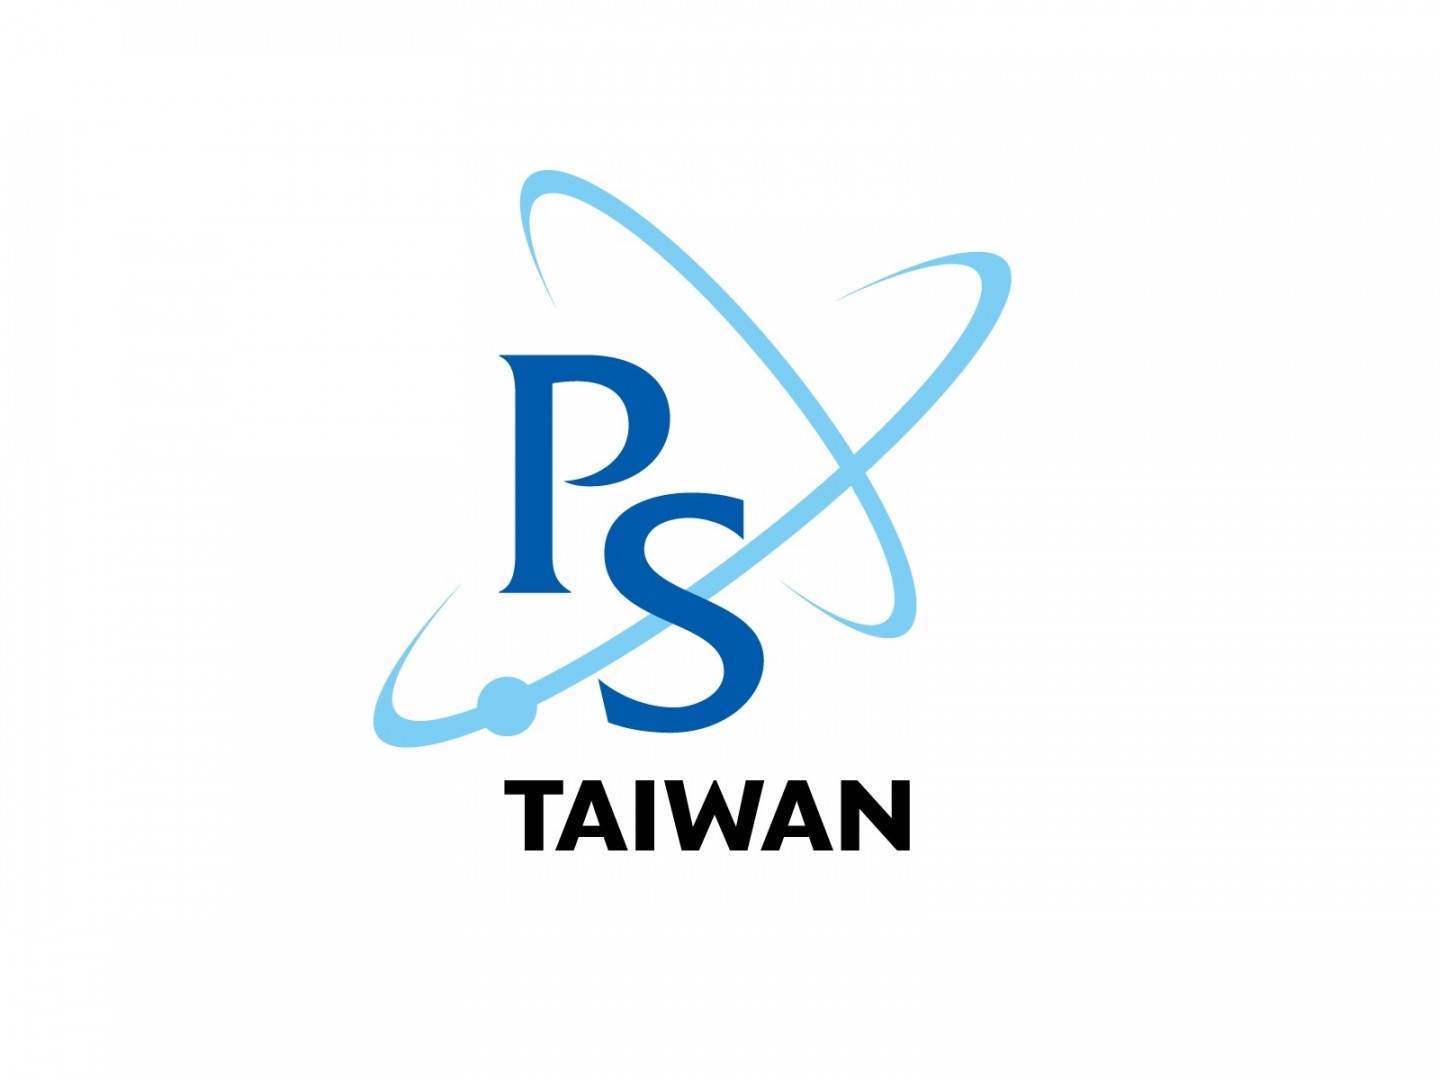  台灣物理學會 物理多元人才培育交流聚會申請補助辦法 